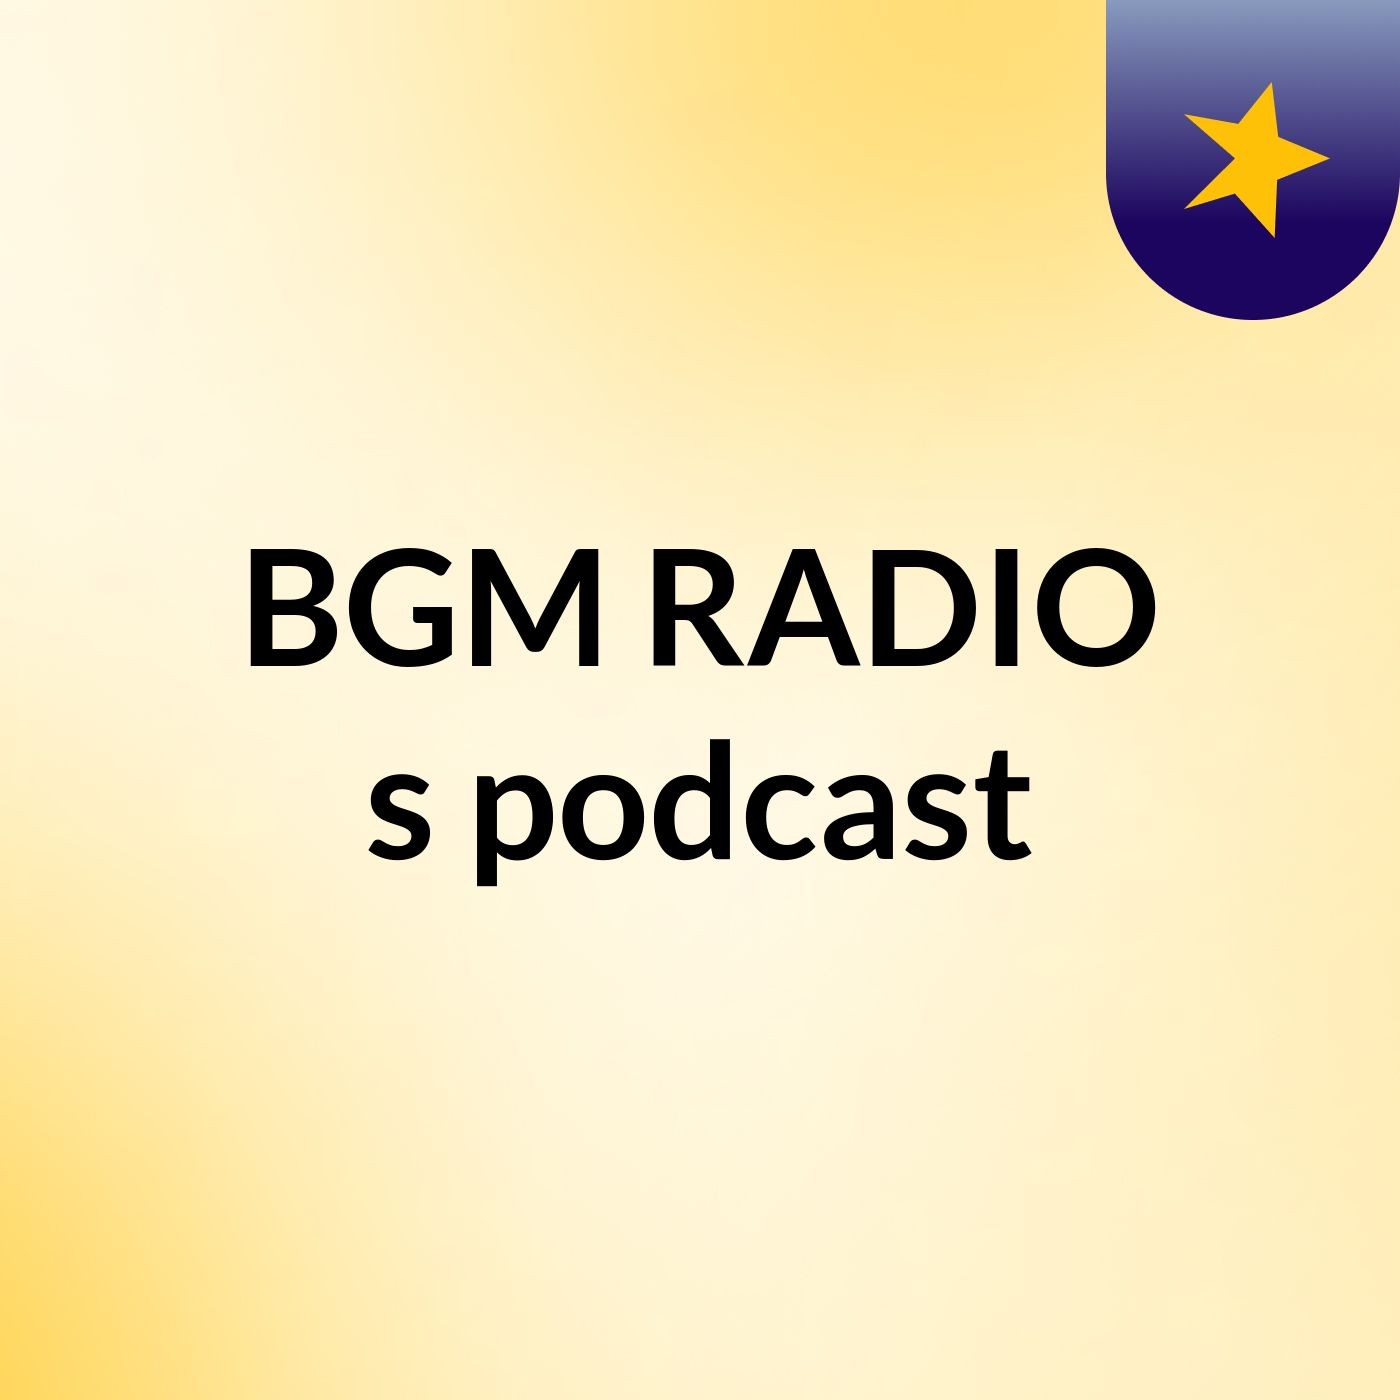 BGM RADIO's podcast